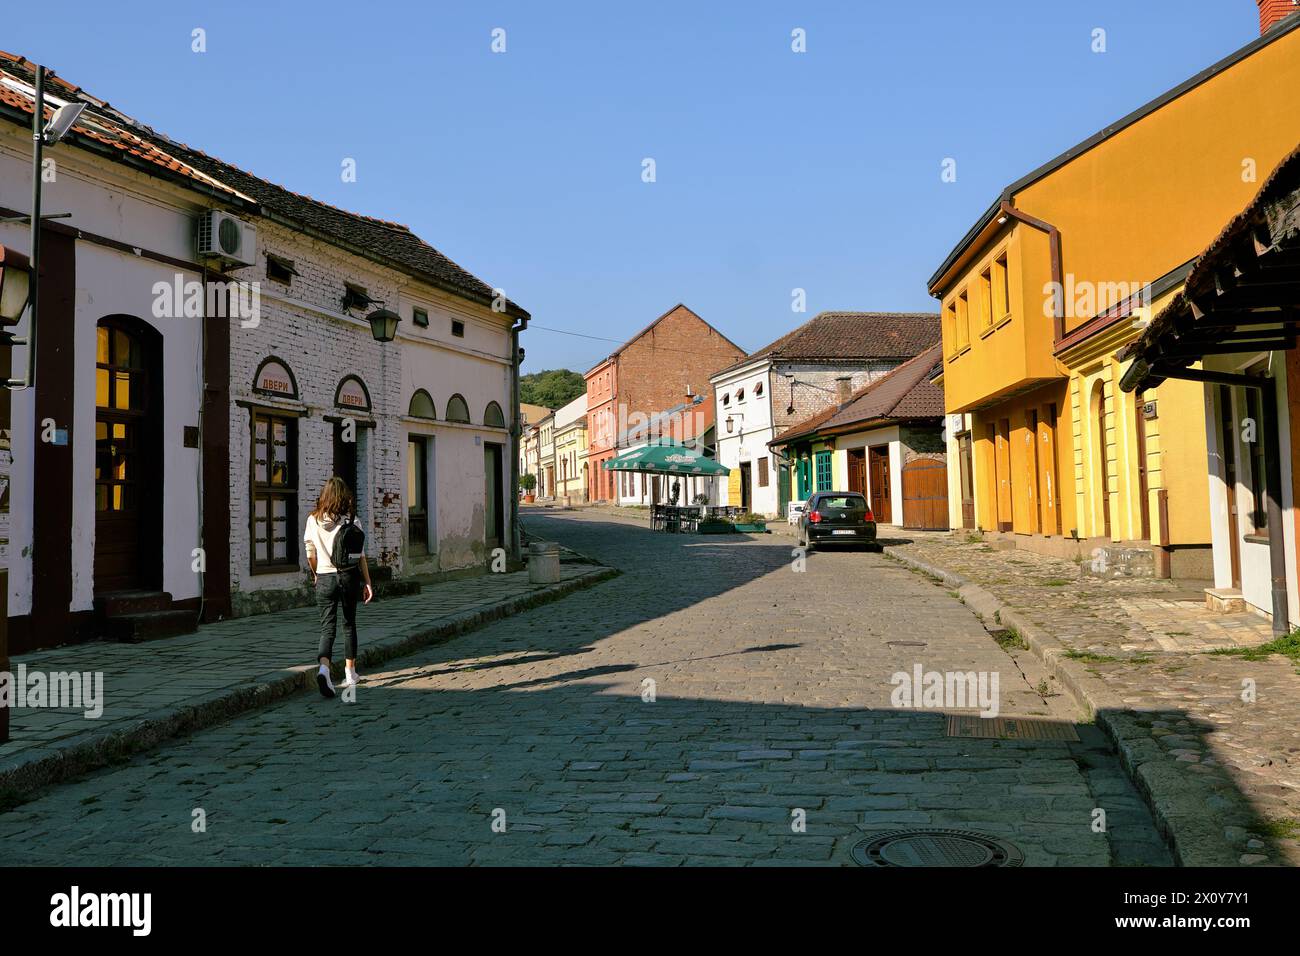 Eine allein stehende junge Frau, die auf einer Kopfsteinpflasterstraße zwischen den Geschäften und Geschäften läuft, die auf dem Tesnjar-Basar in Valjevo, Serbien, geschlossen sind Stockfoto